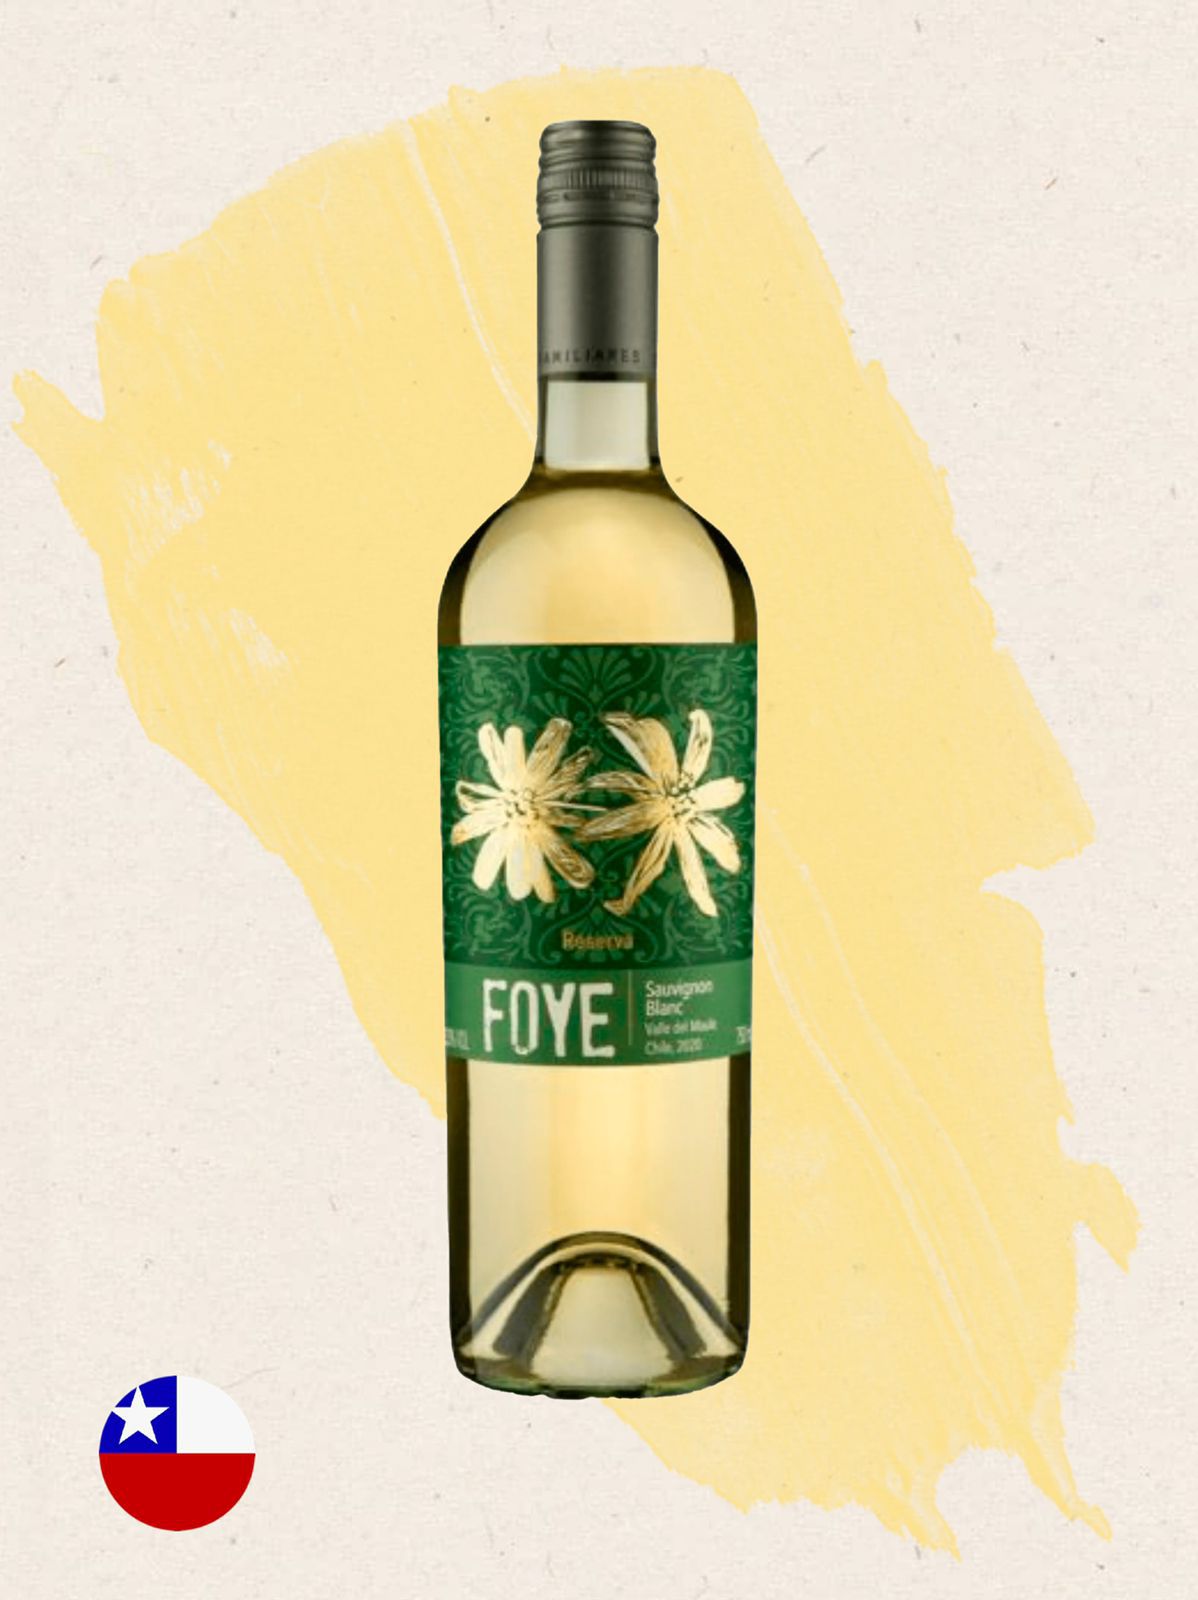 Foye Sauvignon blanc - Clube do Vinho